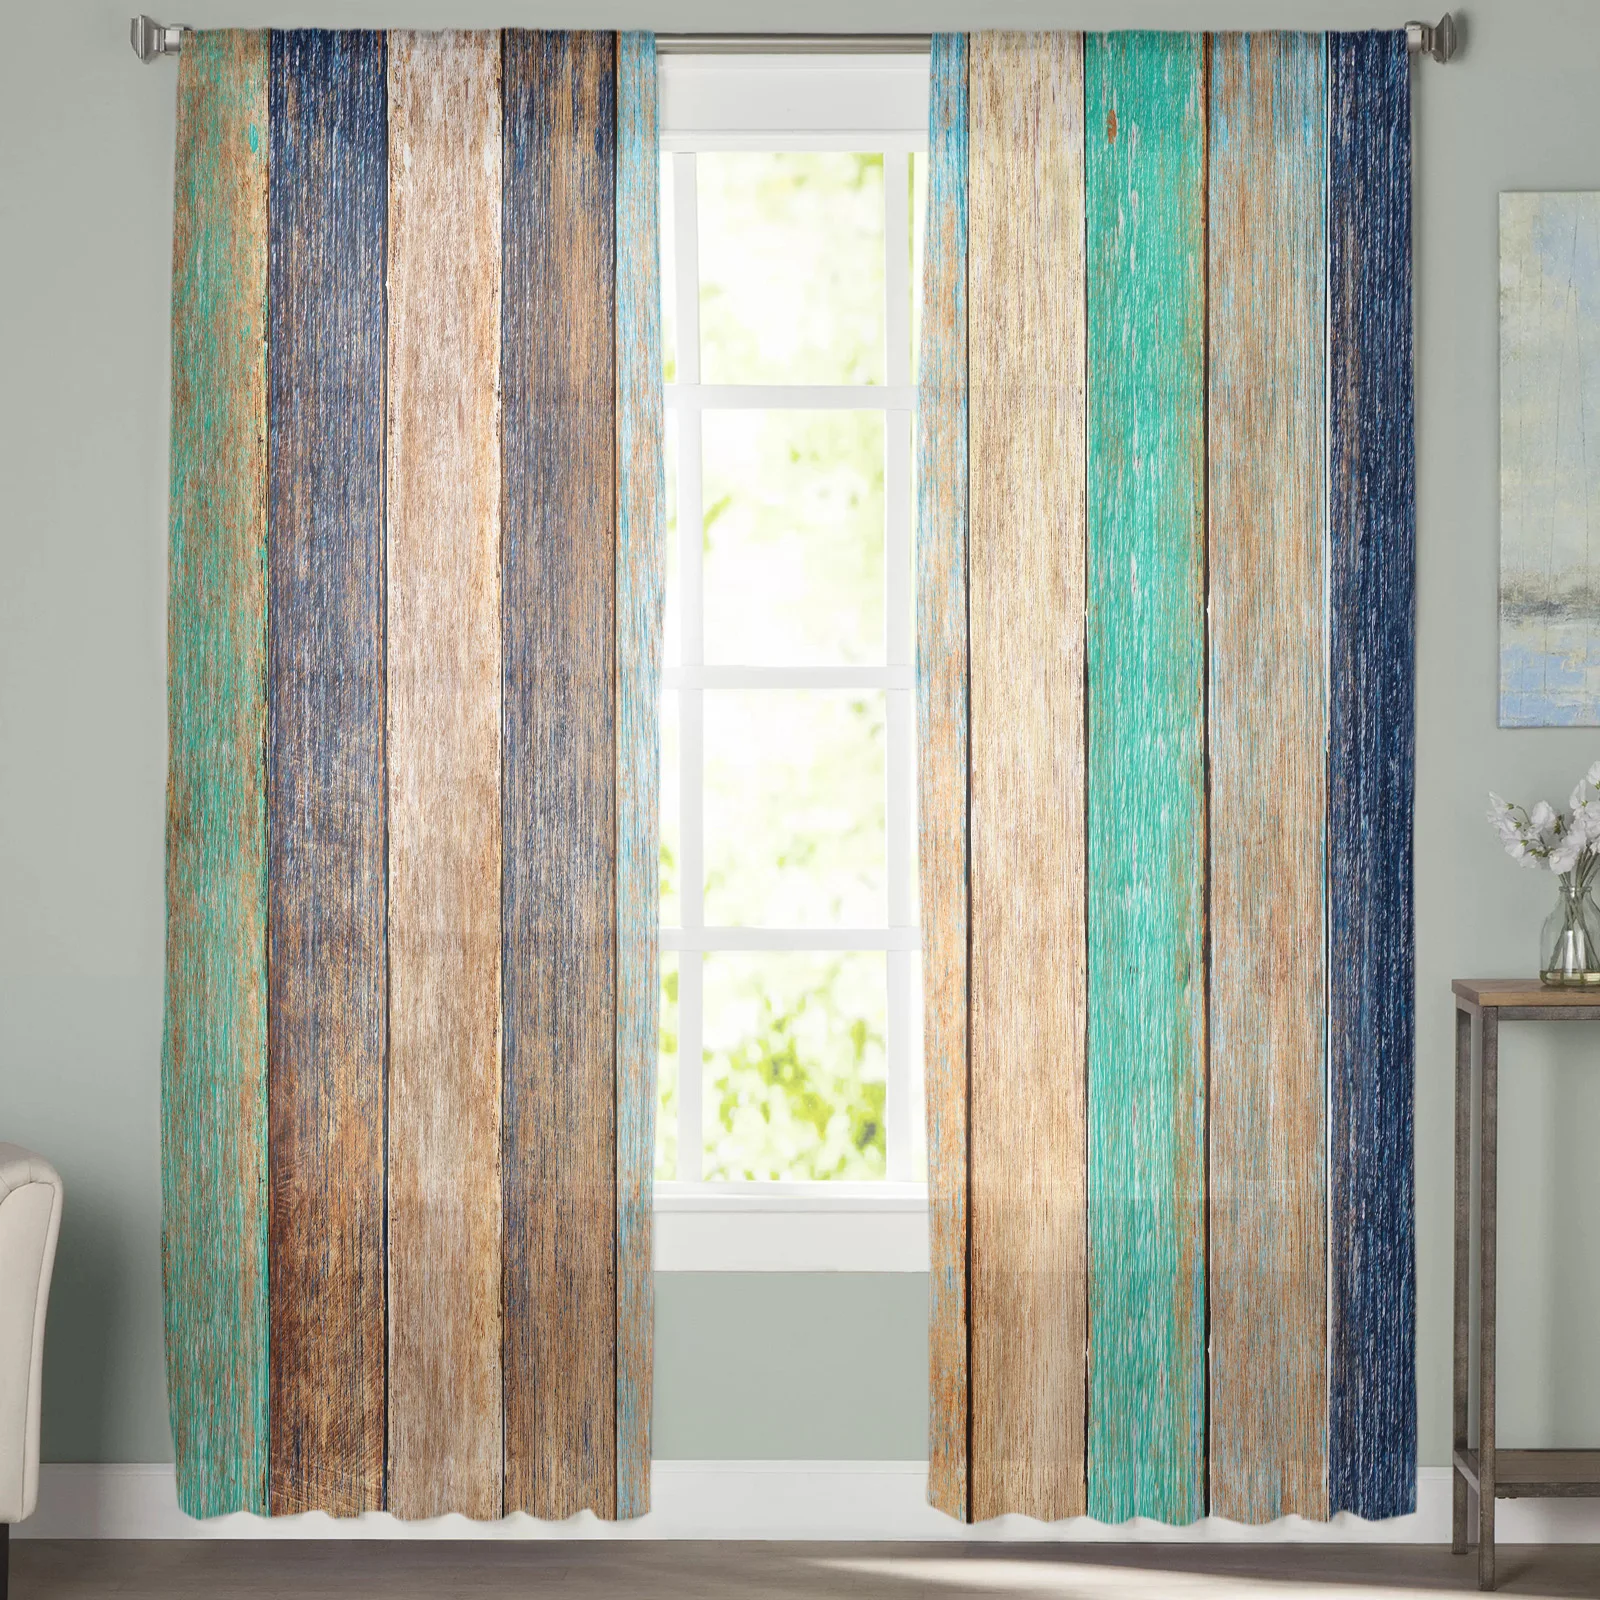 Textura de madeira do vintage cortinas modernas